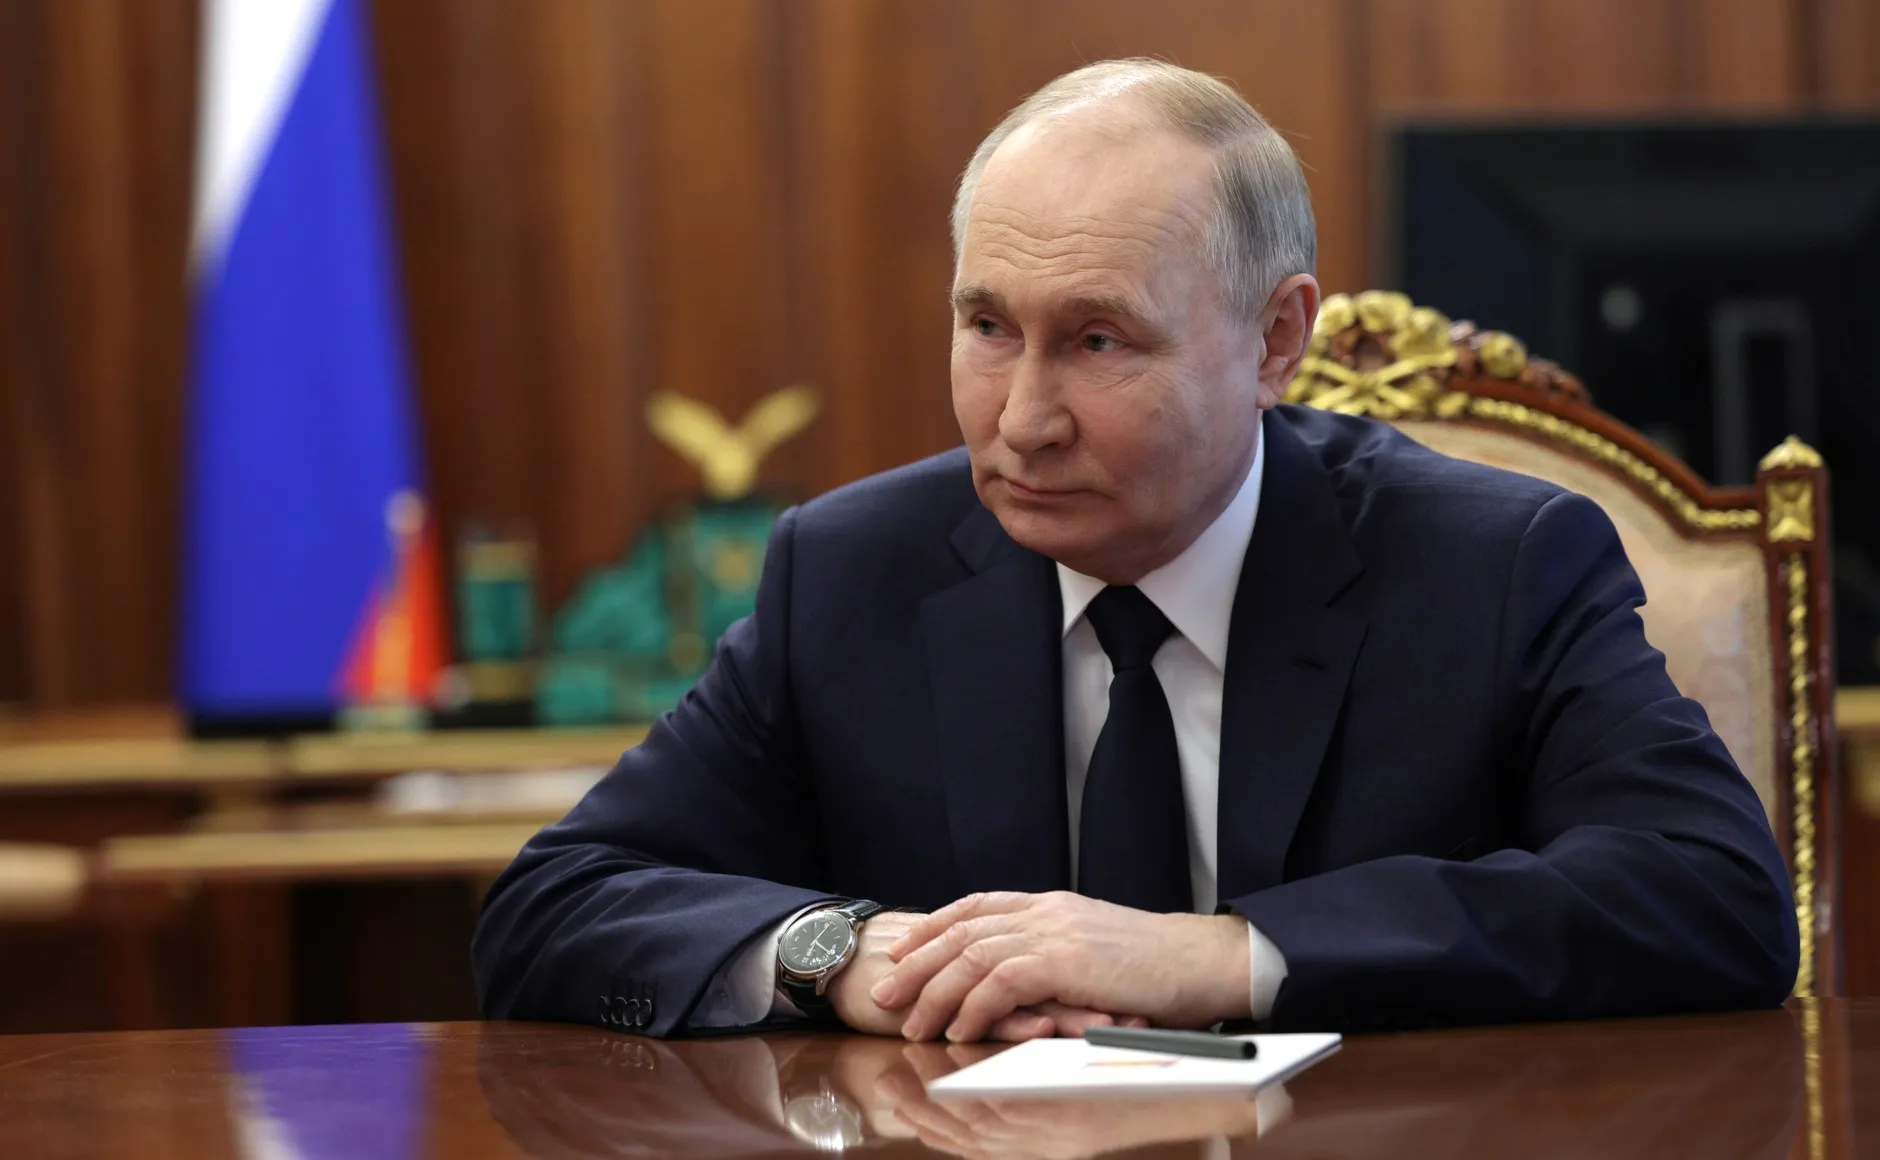 Путин проводит в Кремле совещание с Мишустиным и новым составом кабмина